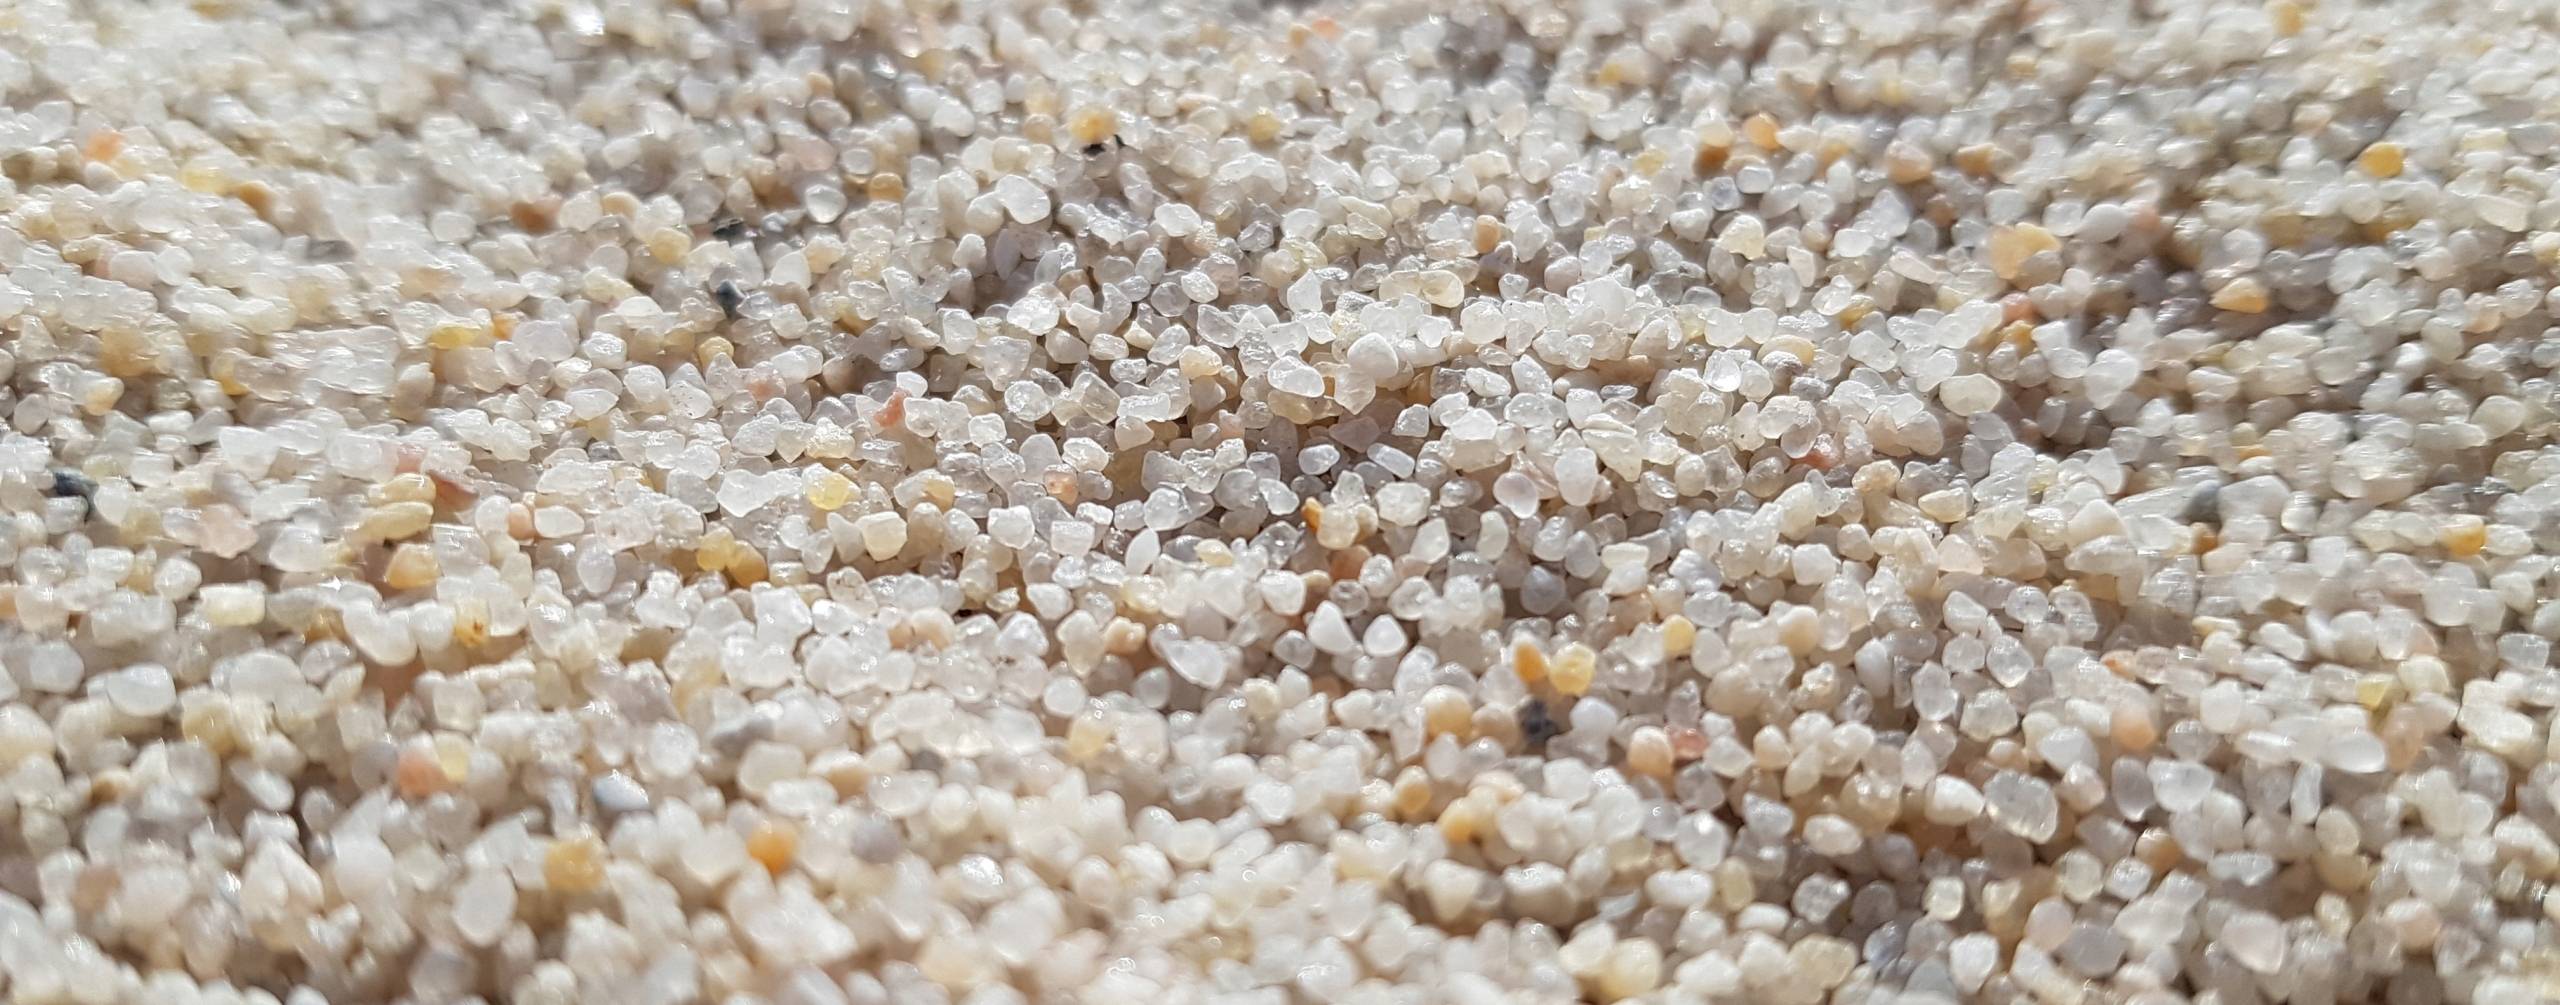 Песок лучший вид грунта для аквариума, его многообразие и свойства